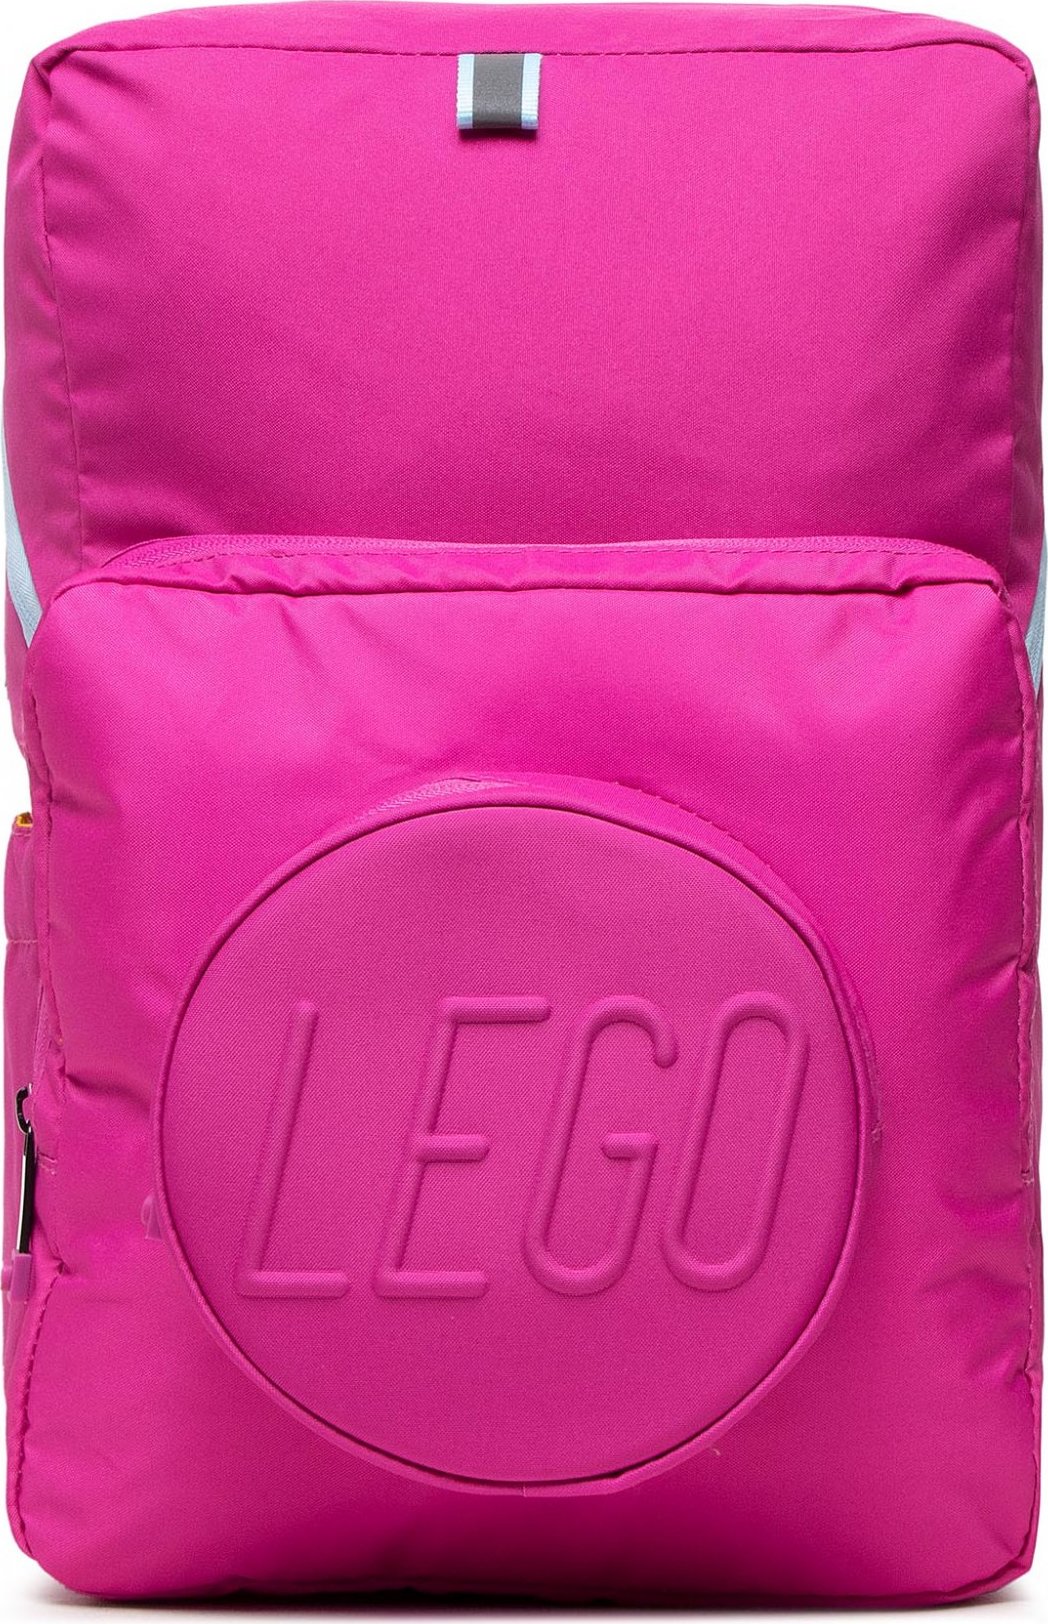 LEGO Signature Light Recruiter School Bag 20224-2207